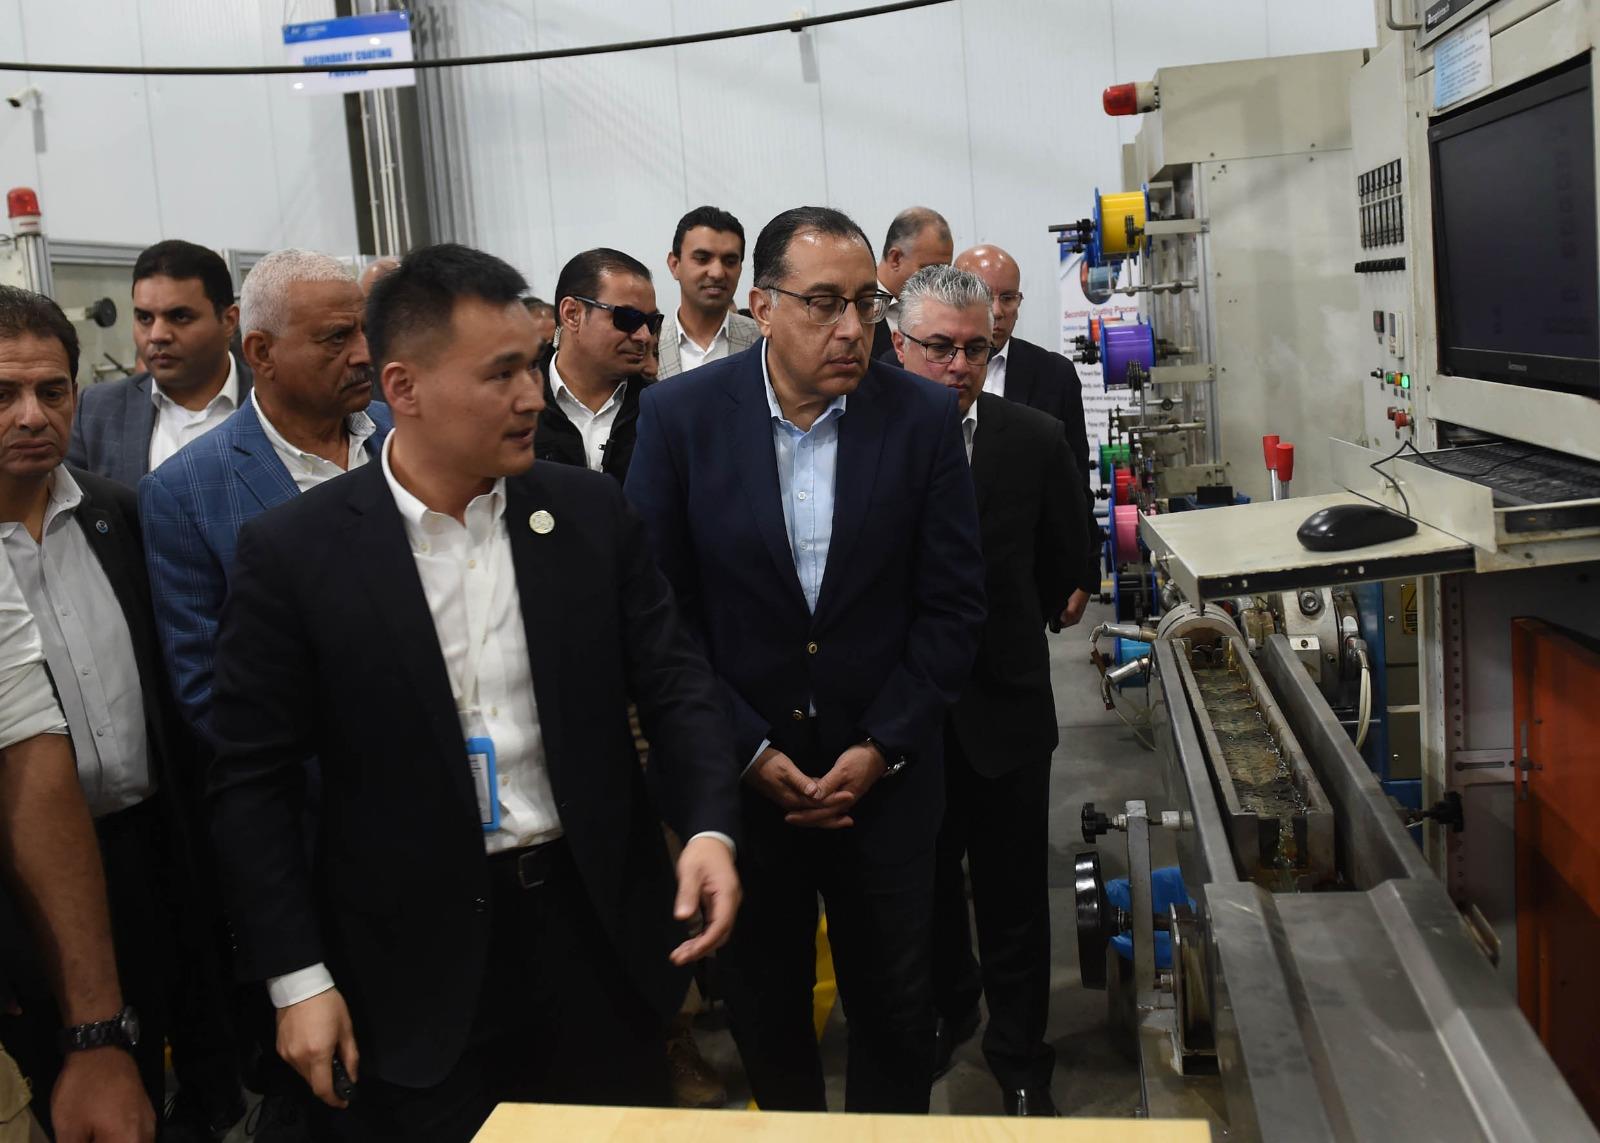 رئيس الوزراء يتفقد مصنع "هنج تونج أوبتيك إليكتريك مصر